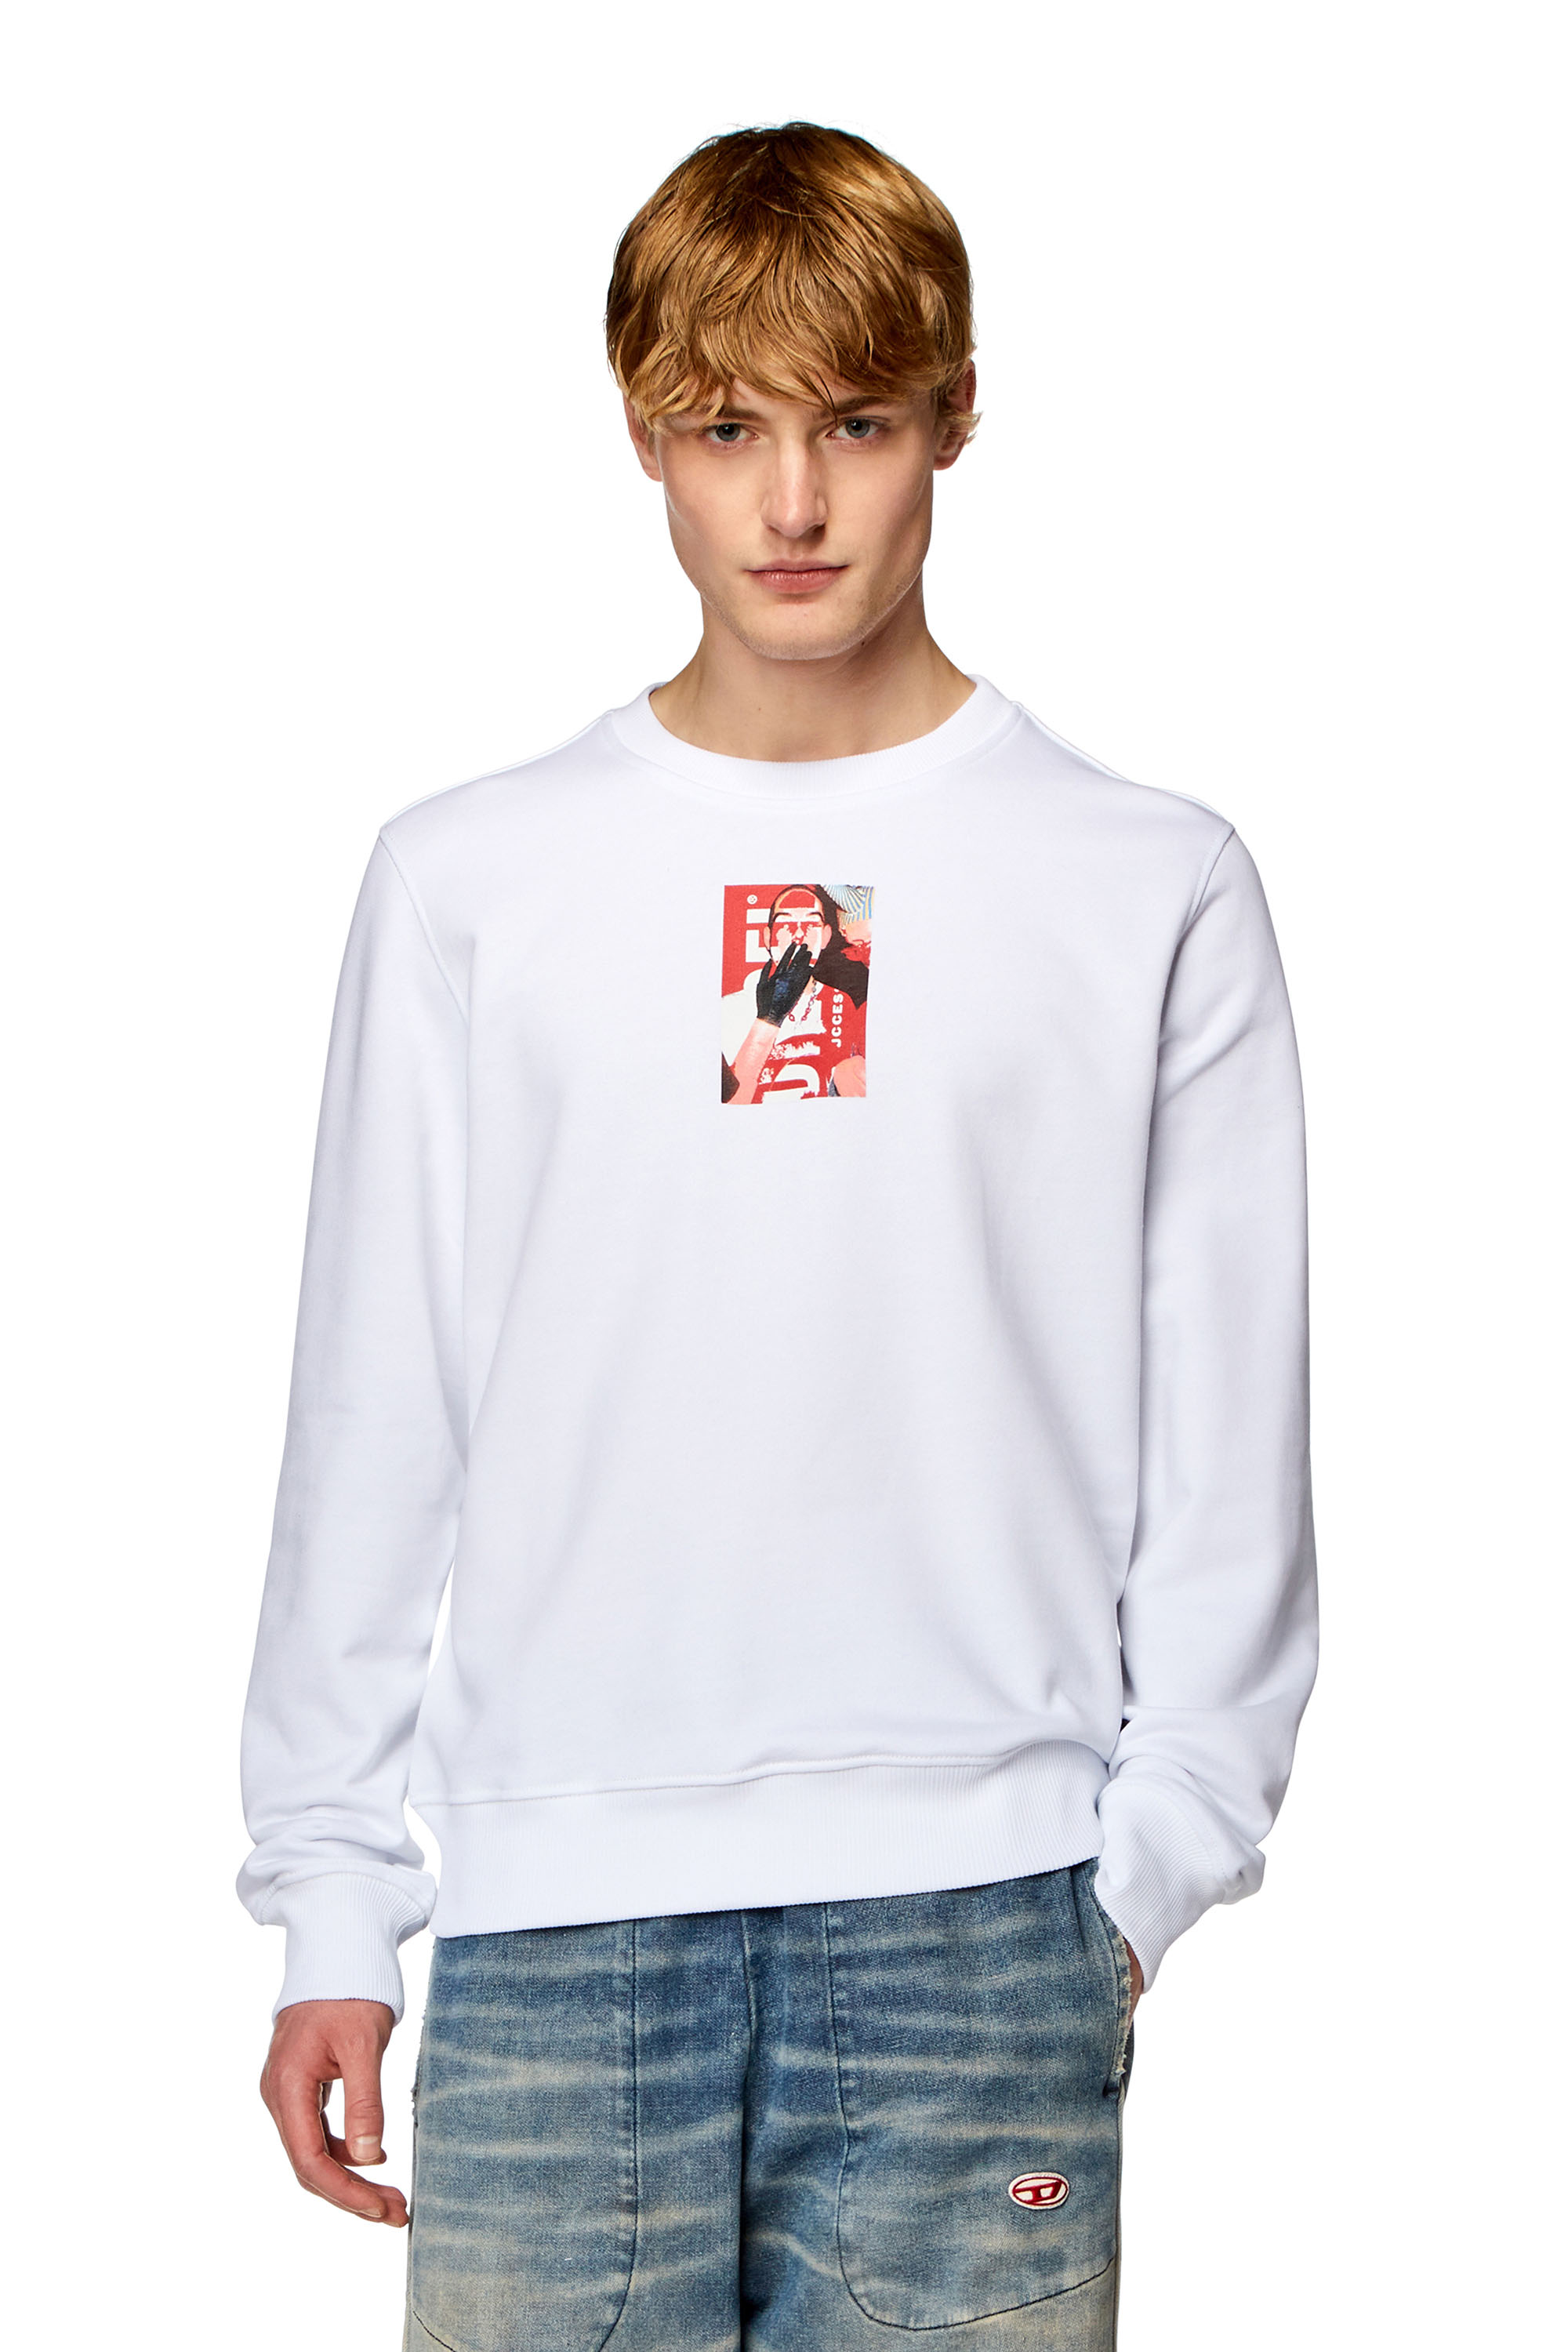 Diesel - Sweat-shirt avec logo photo numérique - Pull Cotton - Homme - Blanc